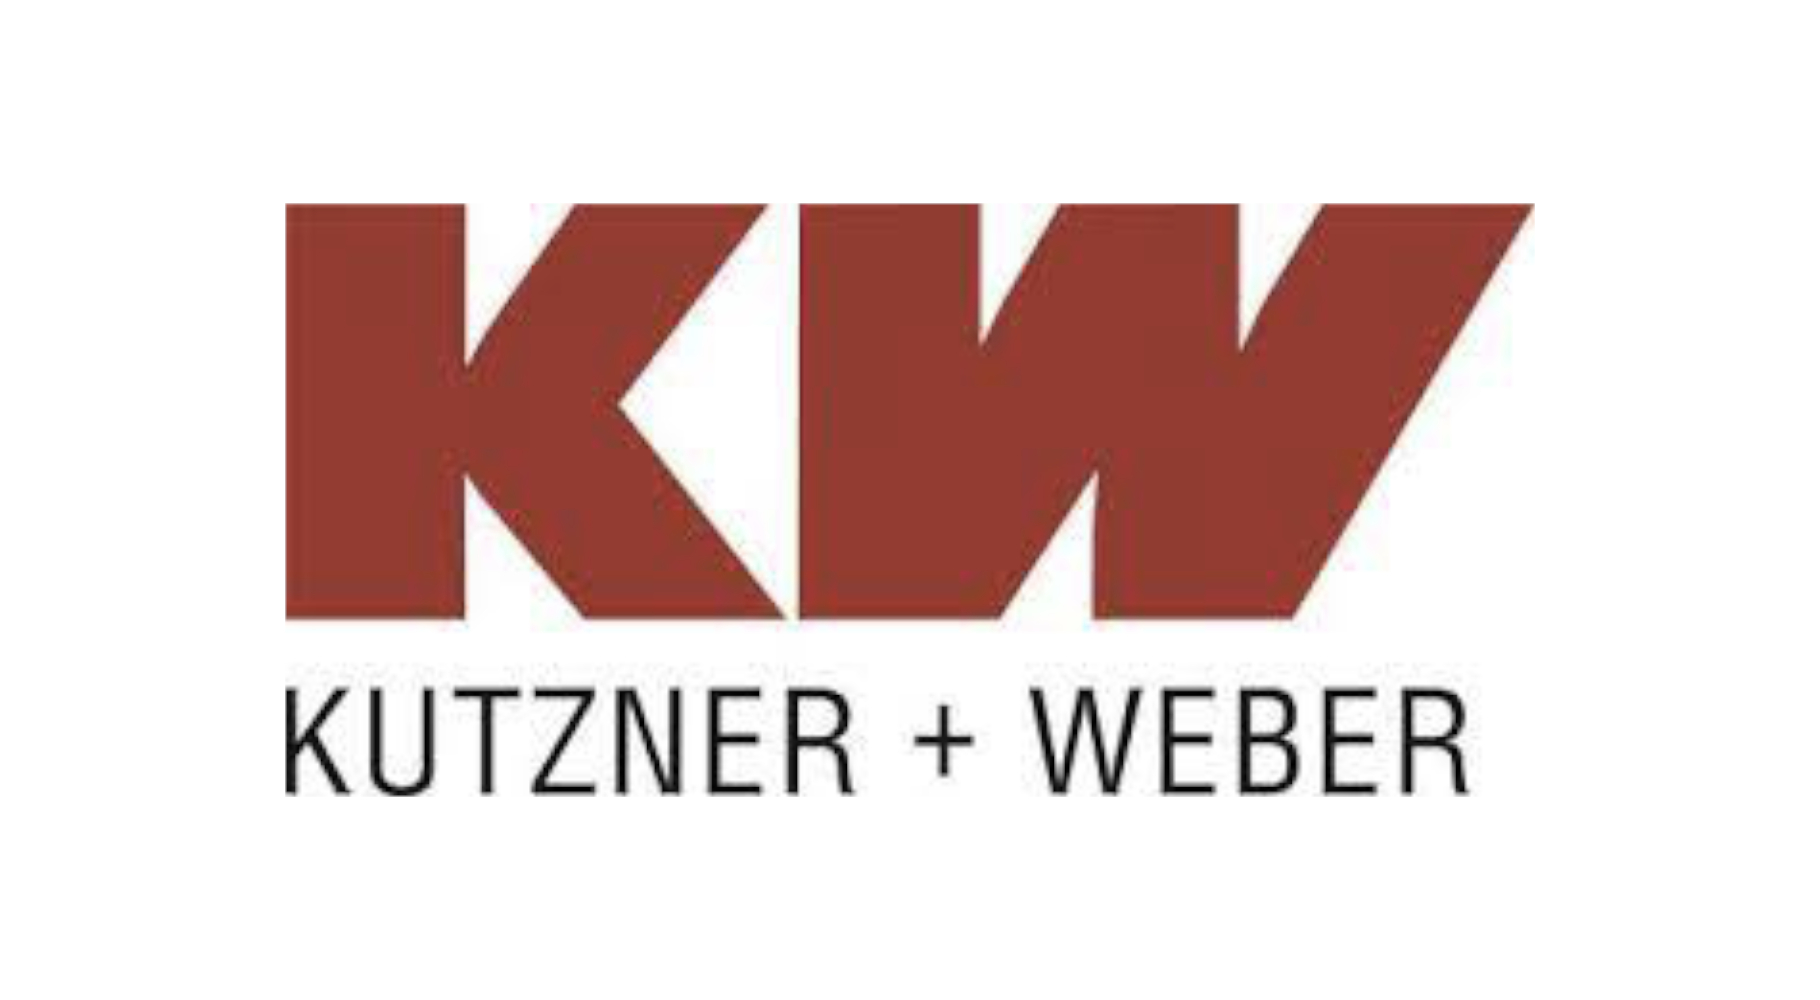 Kutzner und Weber vor weißem Hintergrund